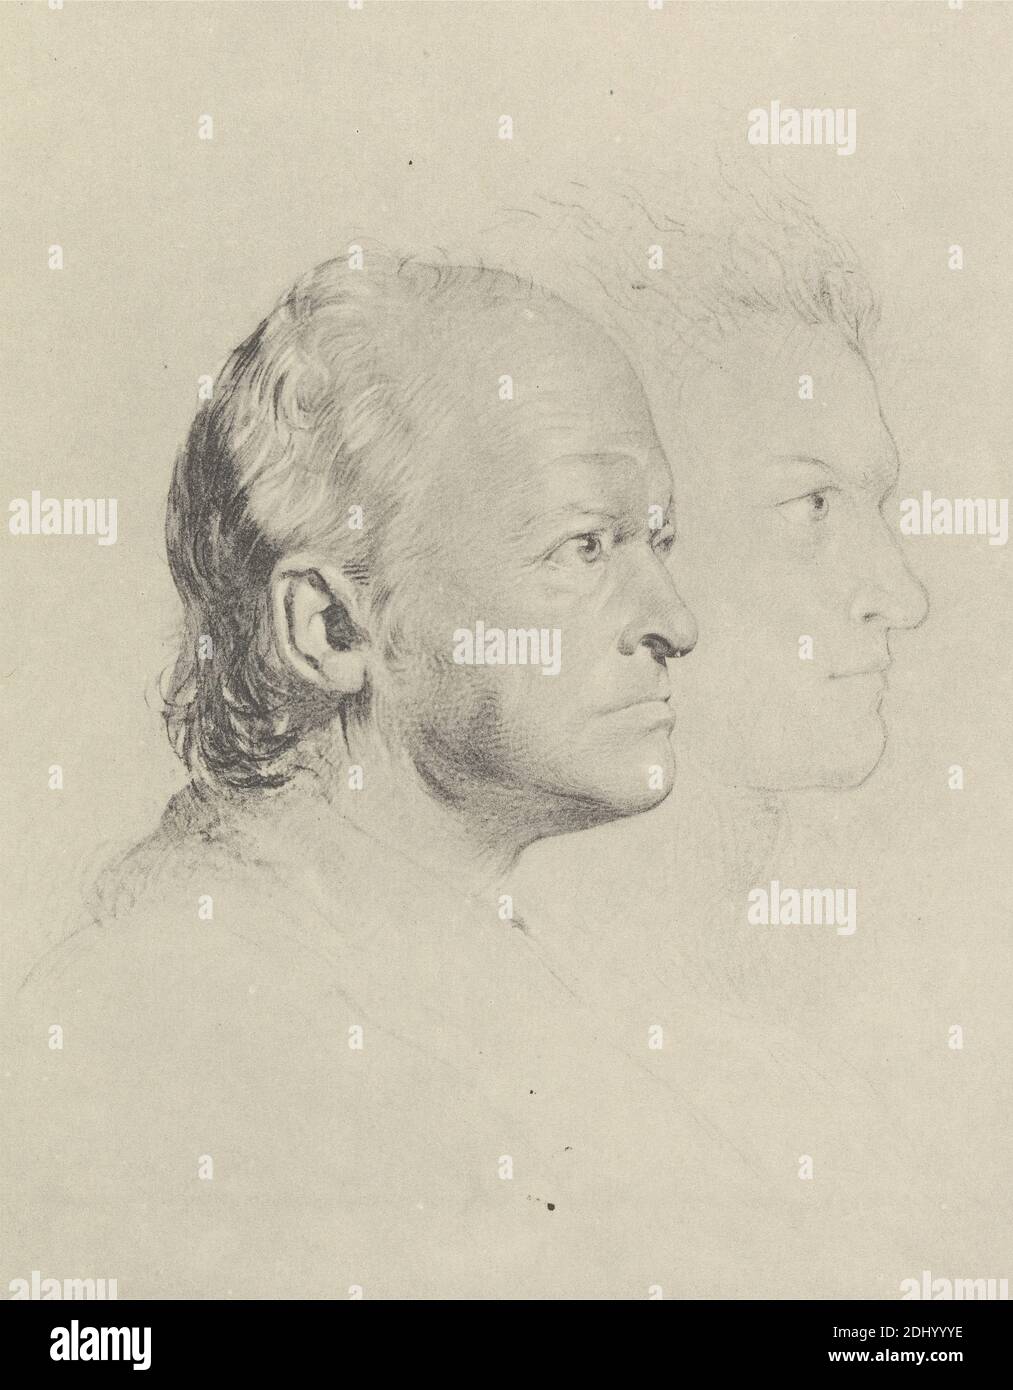 Riproduzione di "William Blake in Youth and Age", Stampa realizzata da George Richmond, 1809–1896, British, dopo Frederick Tatham, 1805–1878, British, Circle of William Blake, 1757–1827, British, ca. 1830, litografia con tinta grigia su carta di wove di spessore moderato, liscia, crema, foglio: 10 11/16 x 8 1/16 pollici (27.1 x 20.5 cm) e immagine: 5 3/4 x 4 1/2 pollici (14.6 x 11.4 cm), testa, contorno, ritratto, profilo, tempo, gioventù Foto Stock